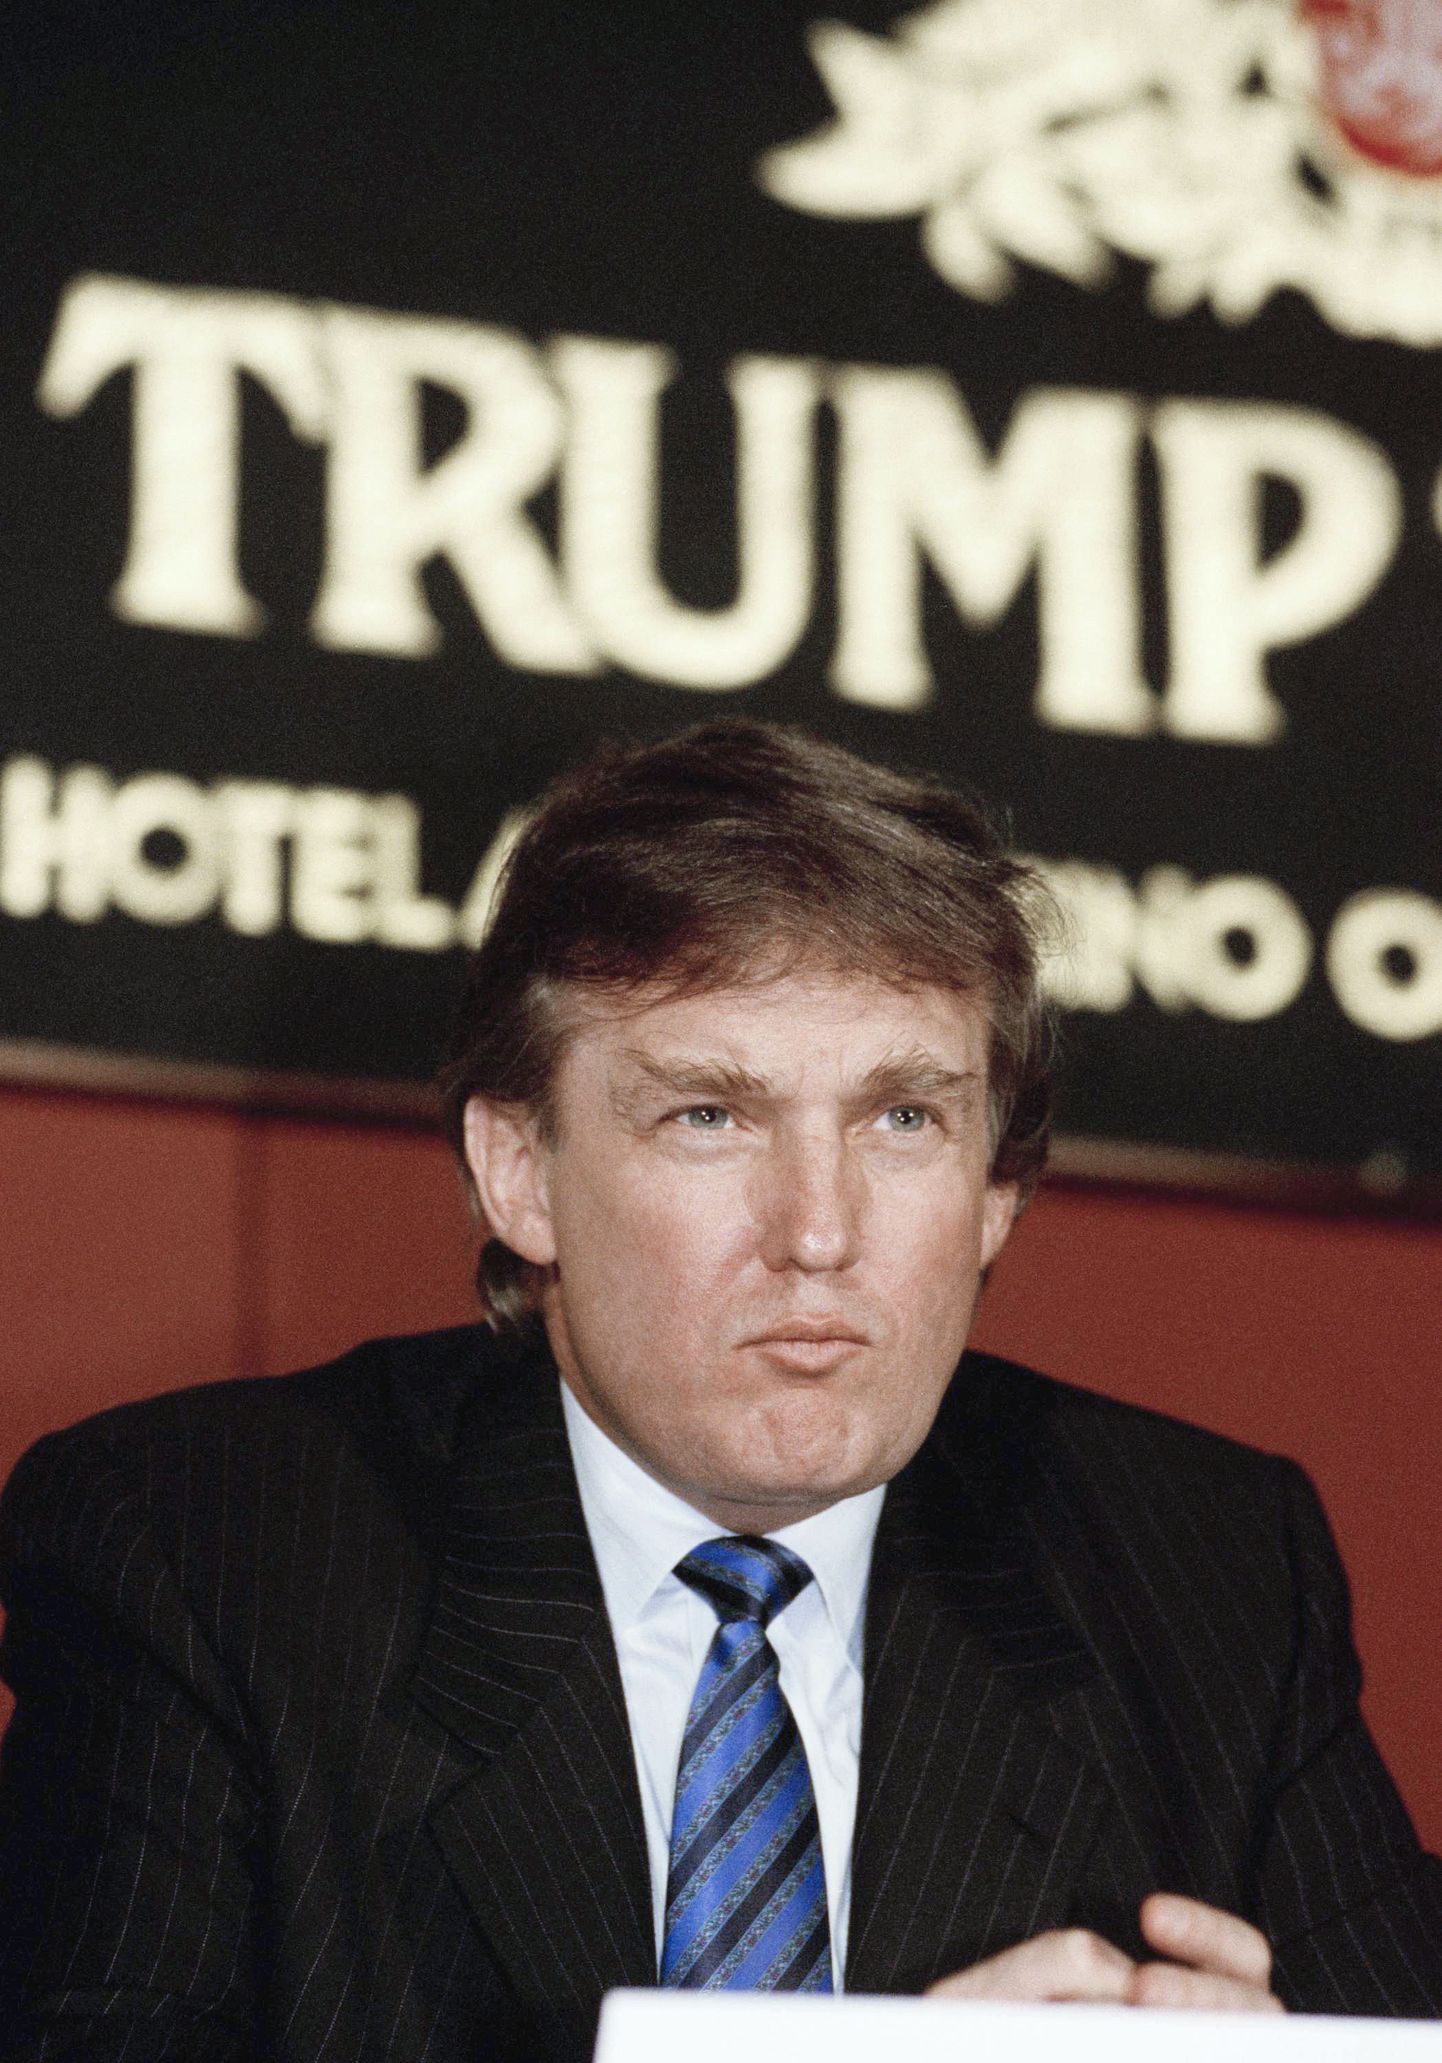 Väidetavalt aitas Donald Trump 1990. aastatel isal maksudest kõrvale hiilida.